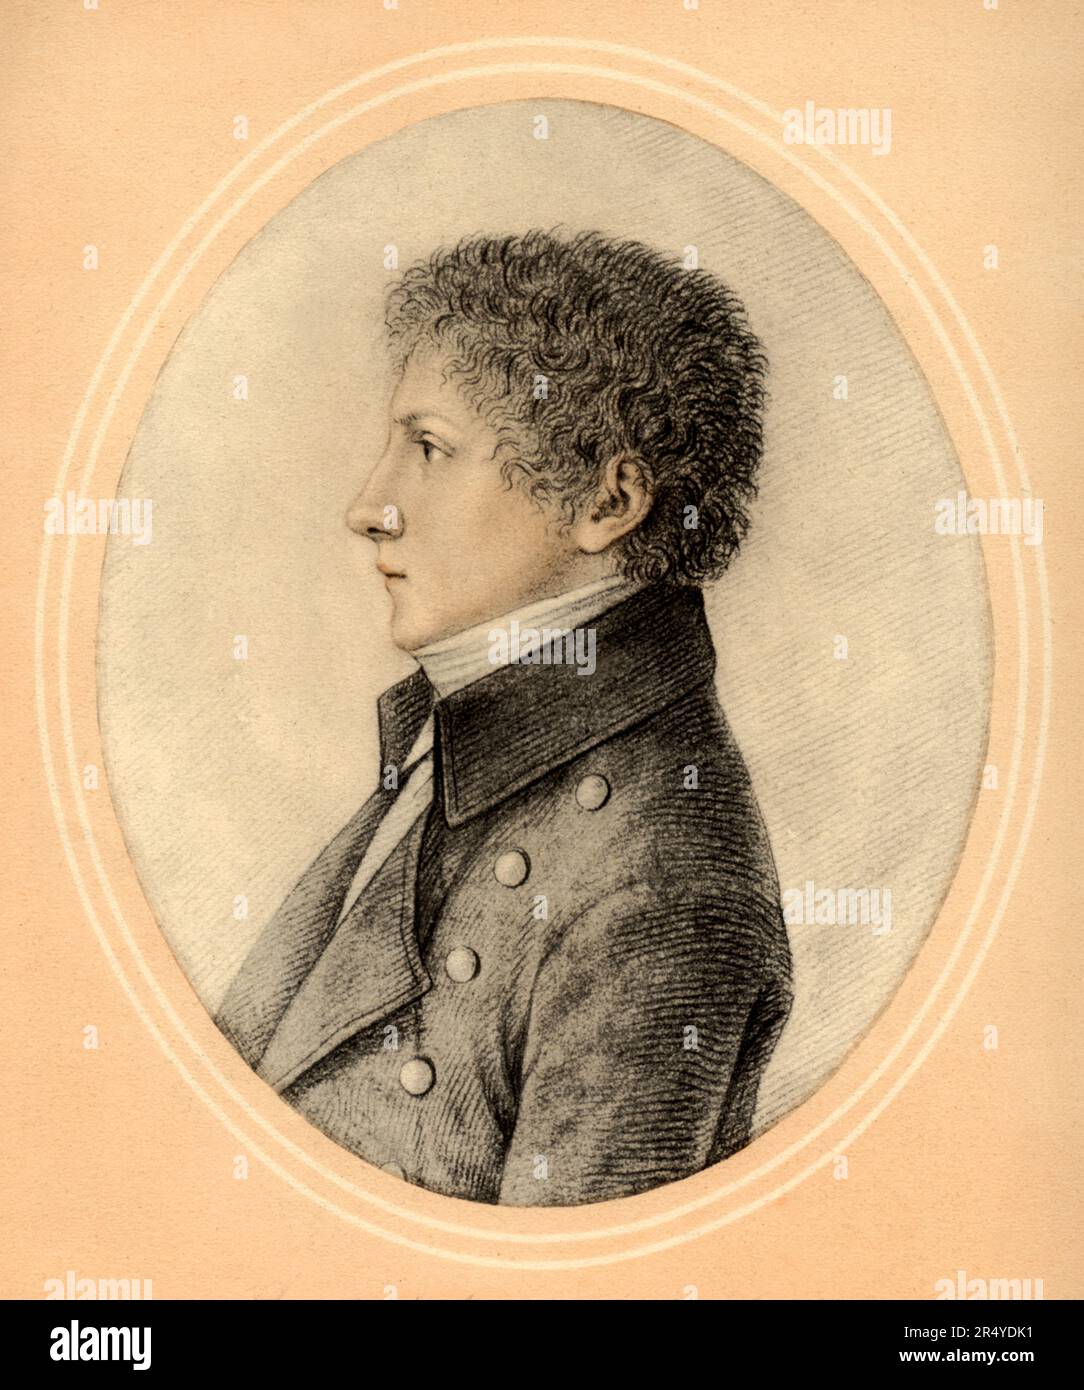 1802 , Milan , ITALIE : le célèbre écrivain et poète italien ALESSANDRO MANZONI ( 1785 - 1873 ) âgé de 17 ans . Portrait du peintre GAUDENZIO BORDIGA ( 1773 - 1837 ) . - POETA - POÈTE - POÉSIE - POÉSIE - SCRITTORE - LETTERATO - LITTÉRATURE - LETTERATURA - RITRATTO - PROFILO - PROFIL --- ARCHIVIO GBB Banque D'Images